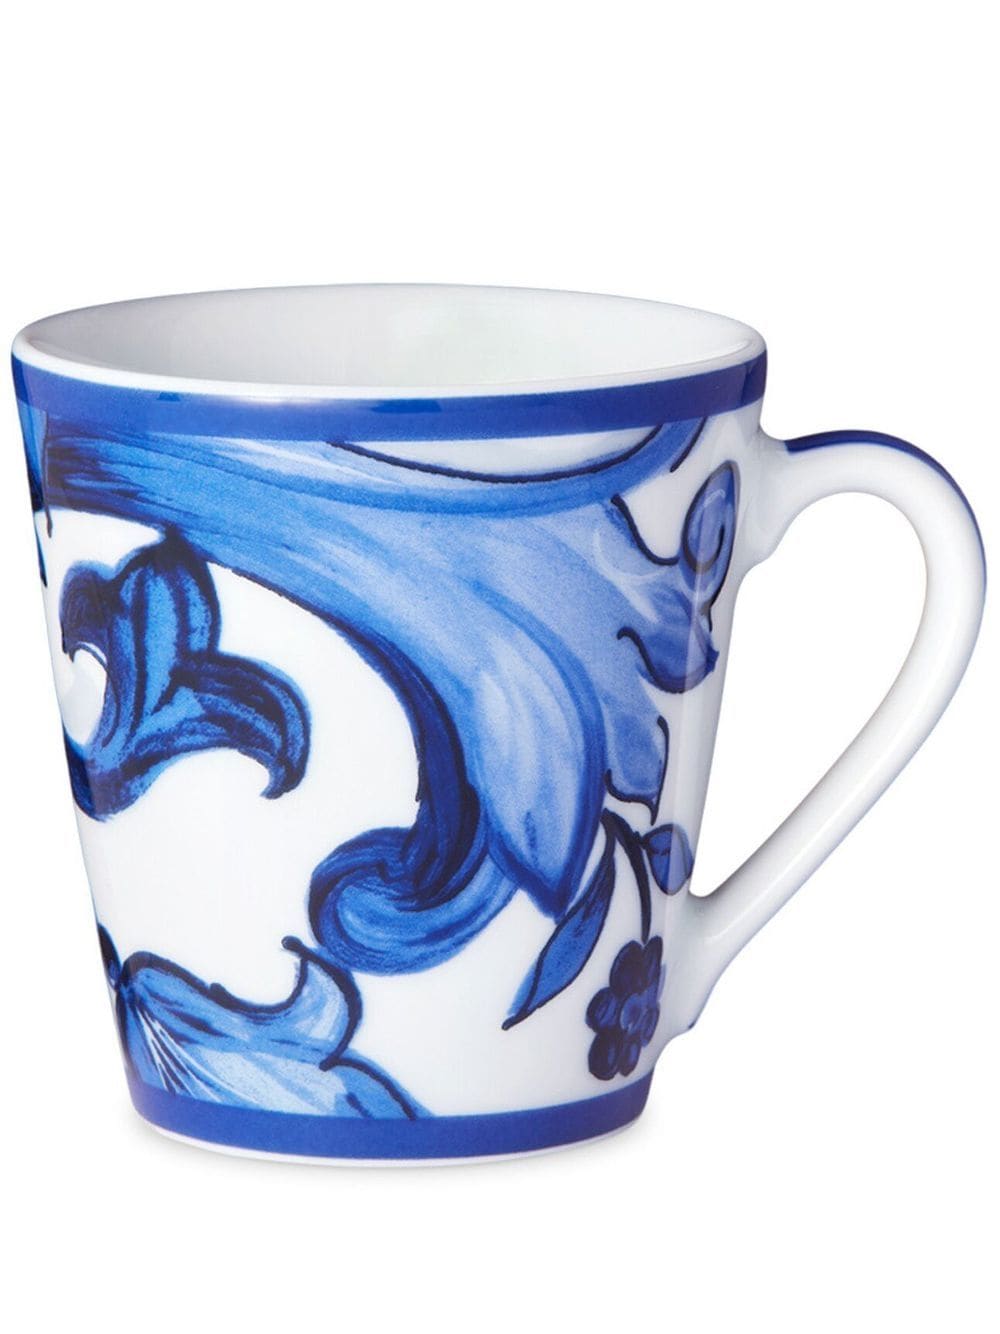 Dolce & Gabbana archive-print porcelain mug - Blue von Dolce & Gabbana